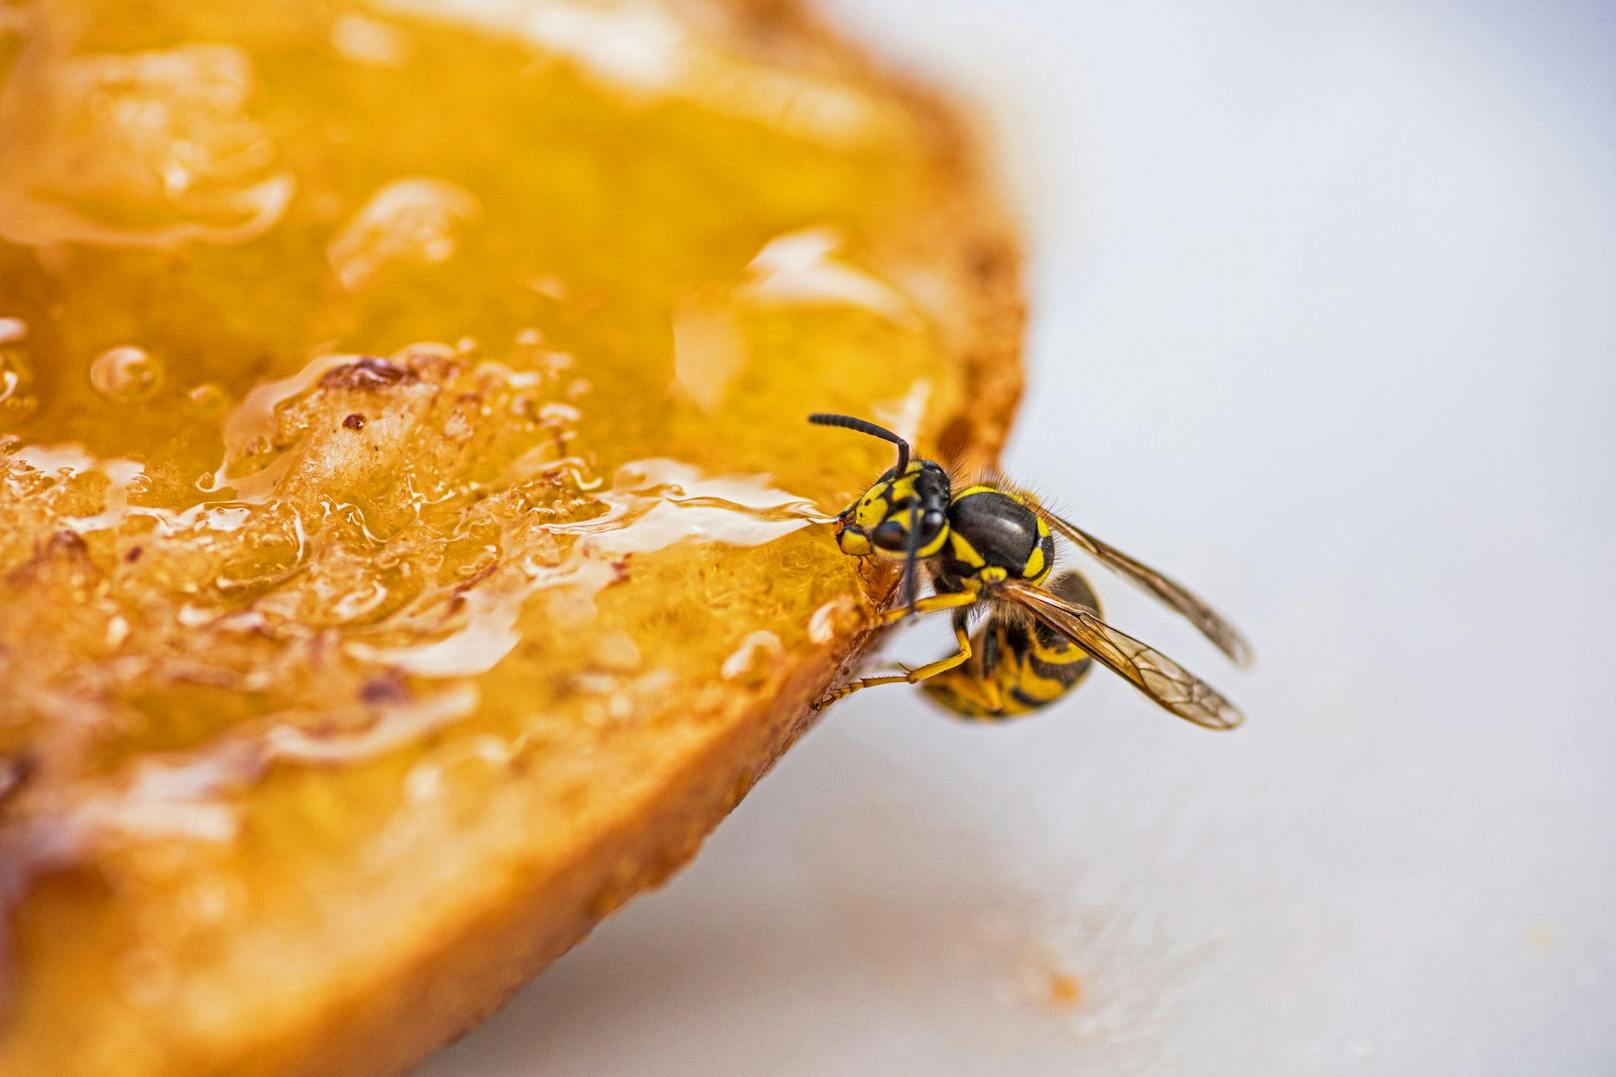 Wespen sind - wie so viele Insekten - nur gefährlich, wenn man allergisch ist und sie ordentlich ärgert.